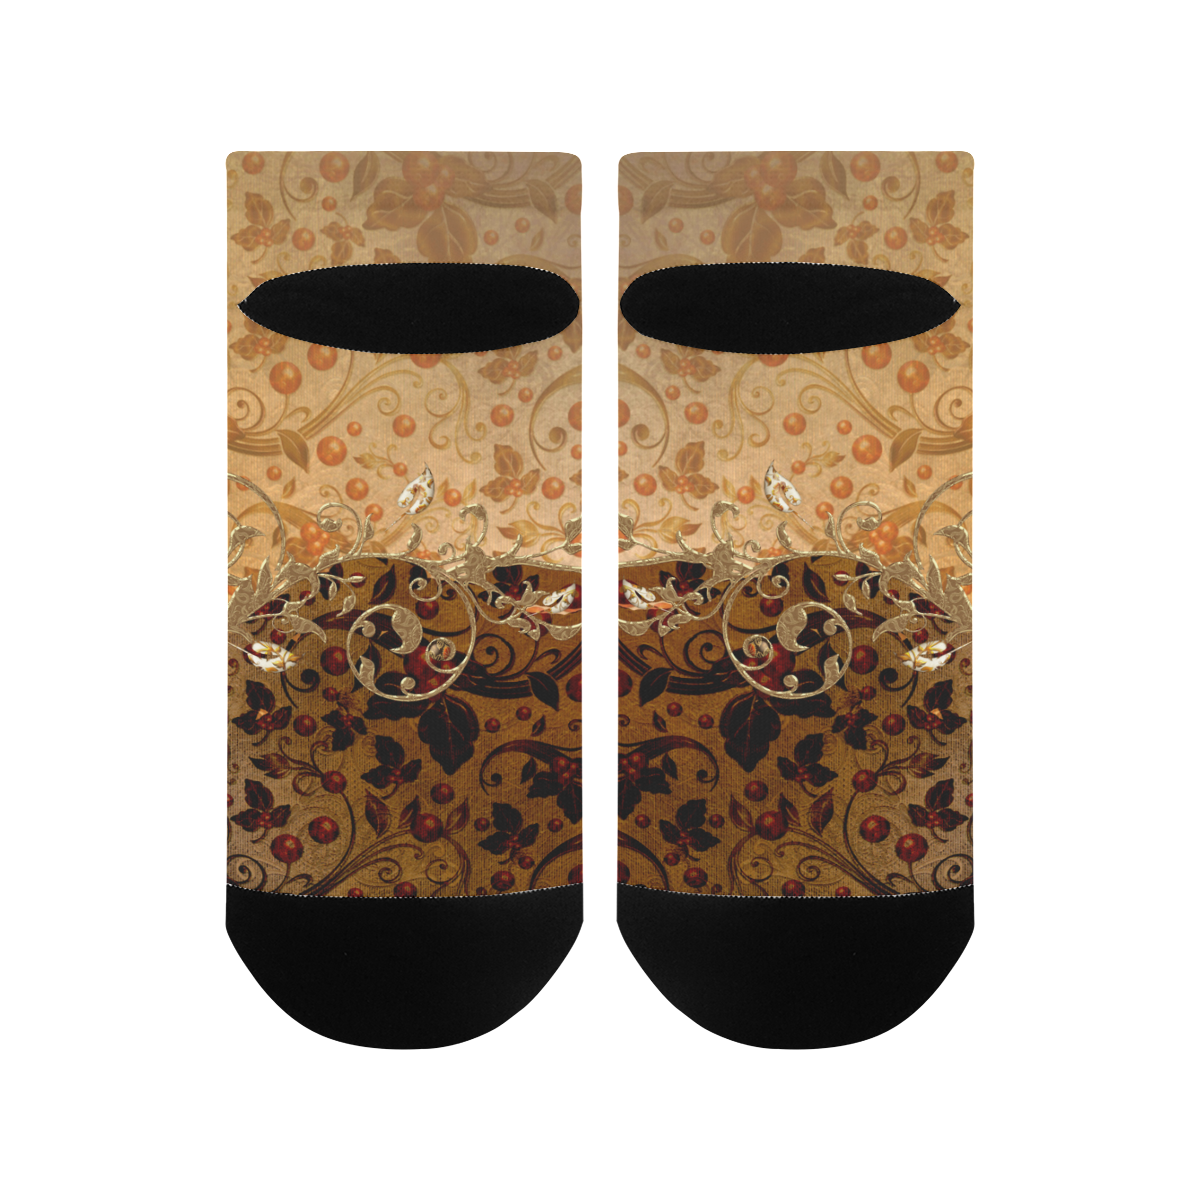 Wonderful decorative floral design Men's Ankle Socks